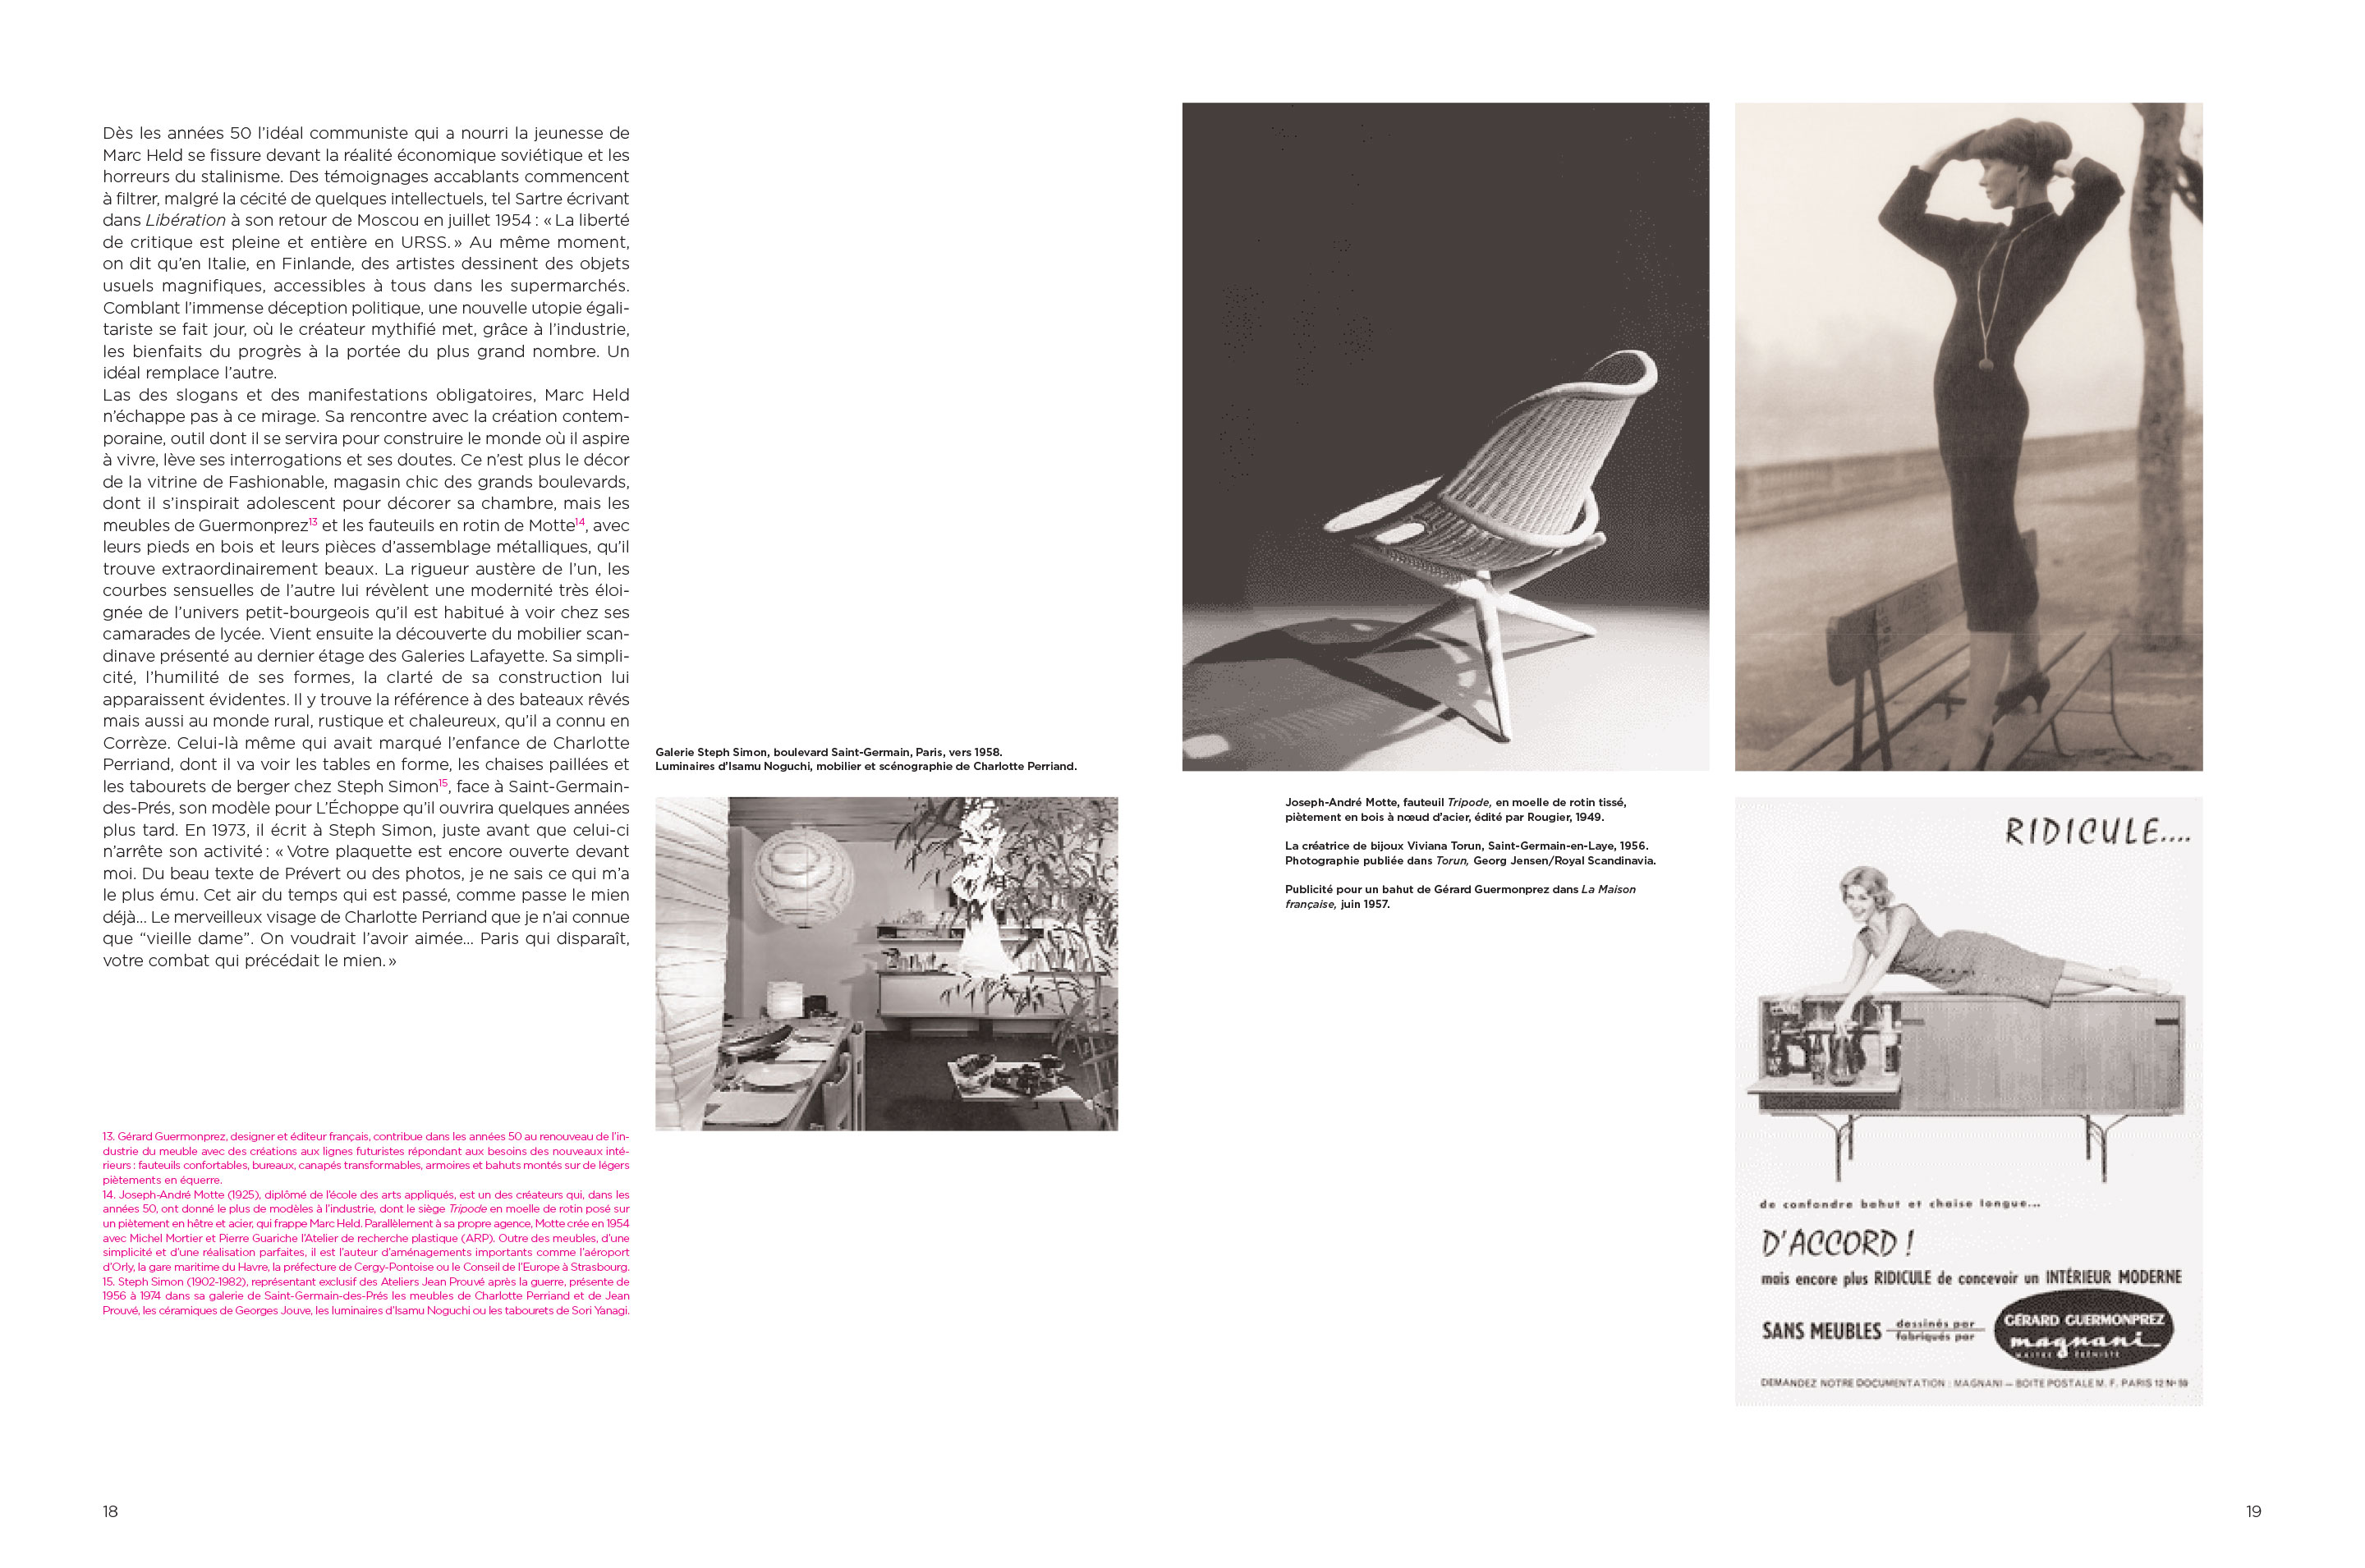 Monographie Marc Held Du design à l’architecture Pages 18-19 Éditions Norma